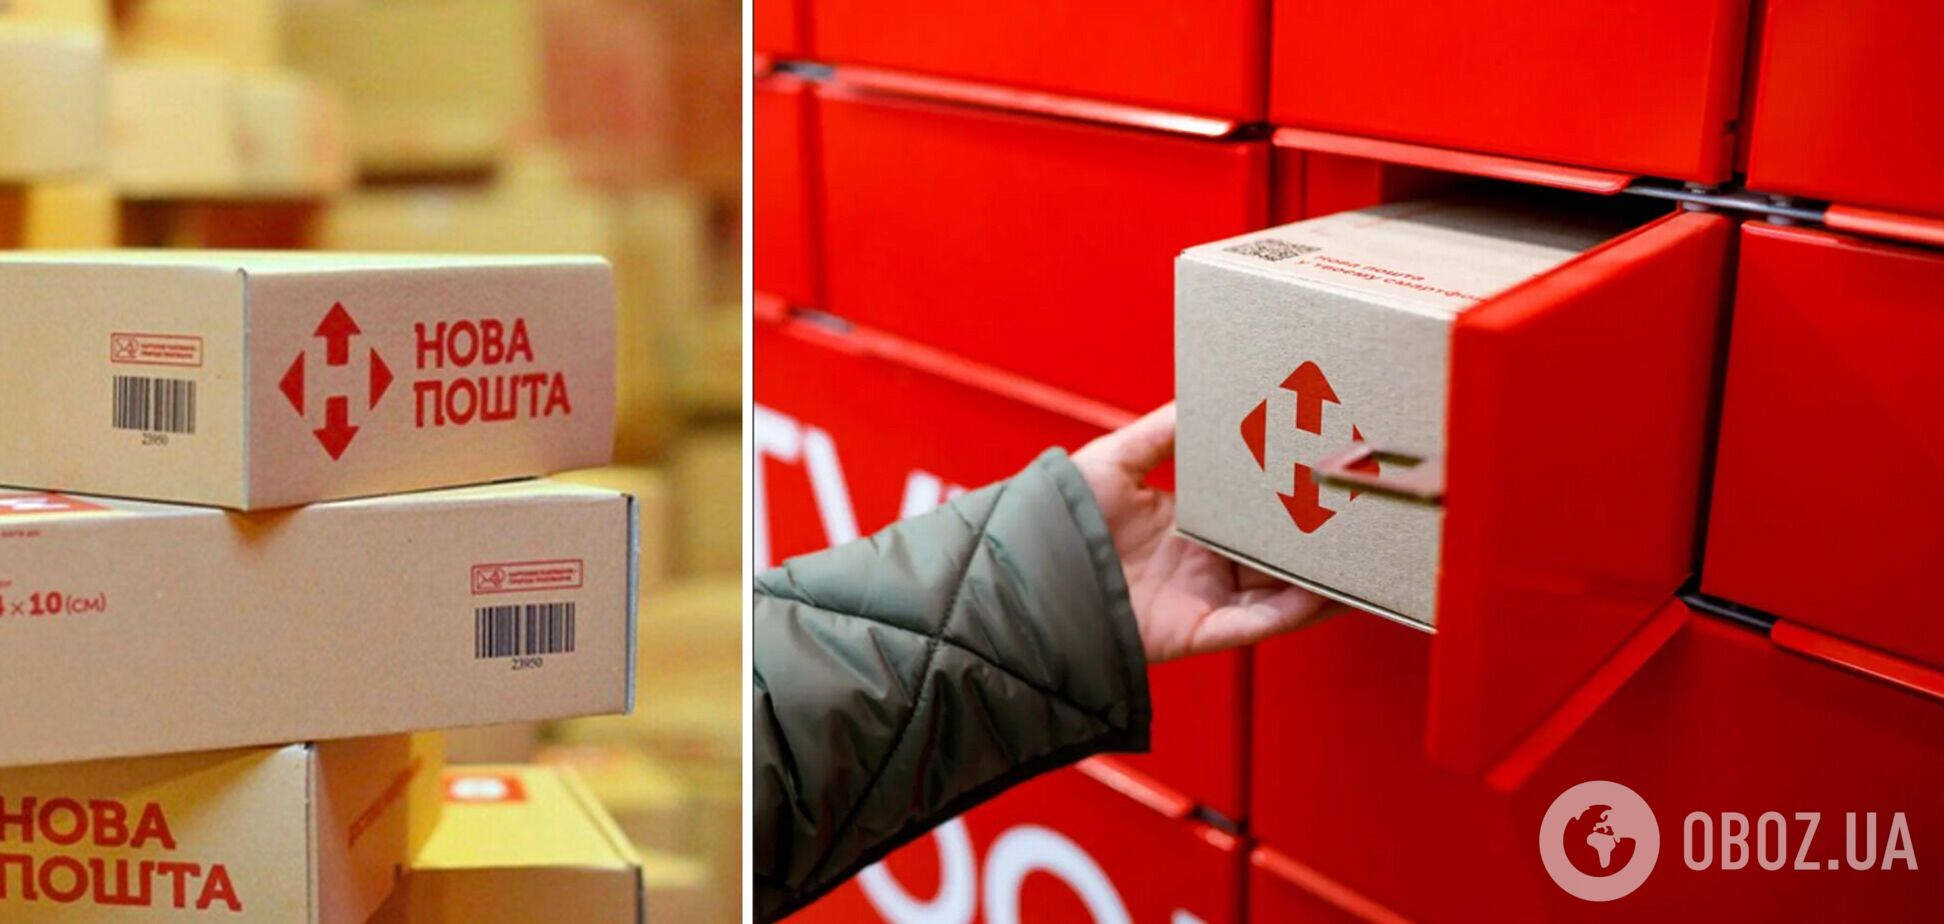 'Нова пошта' розповіла про 'приховану' функцію поштоматів